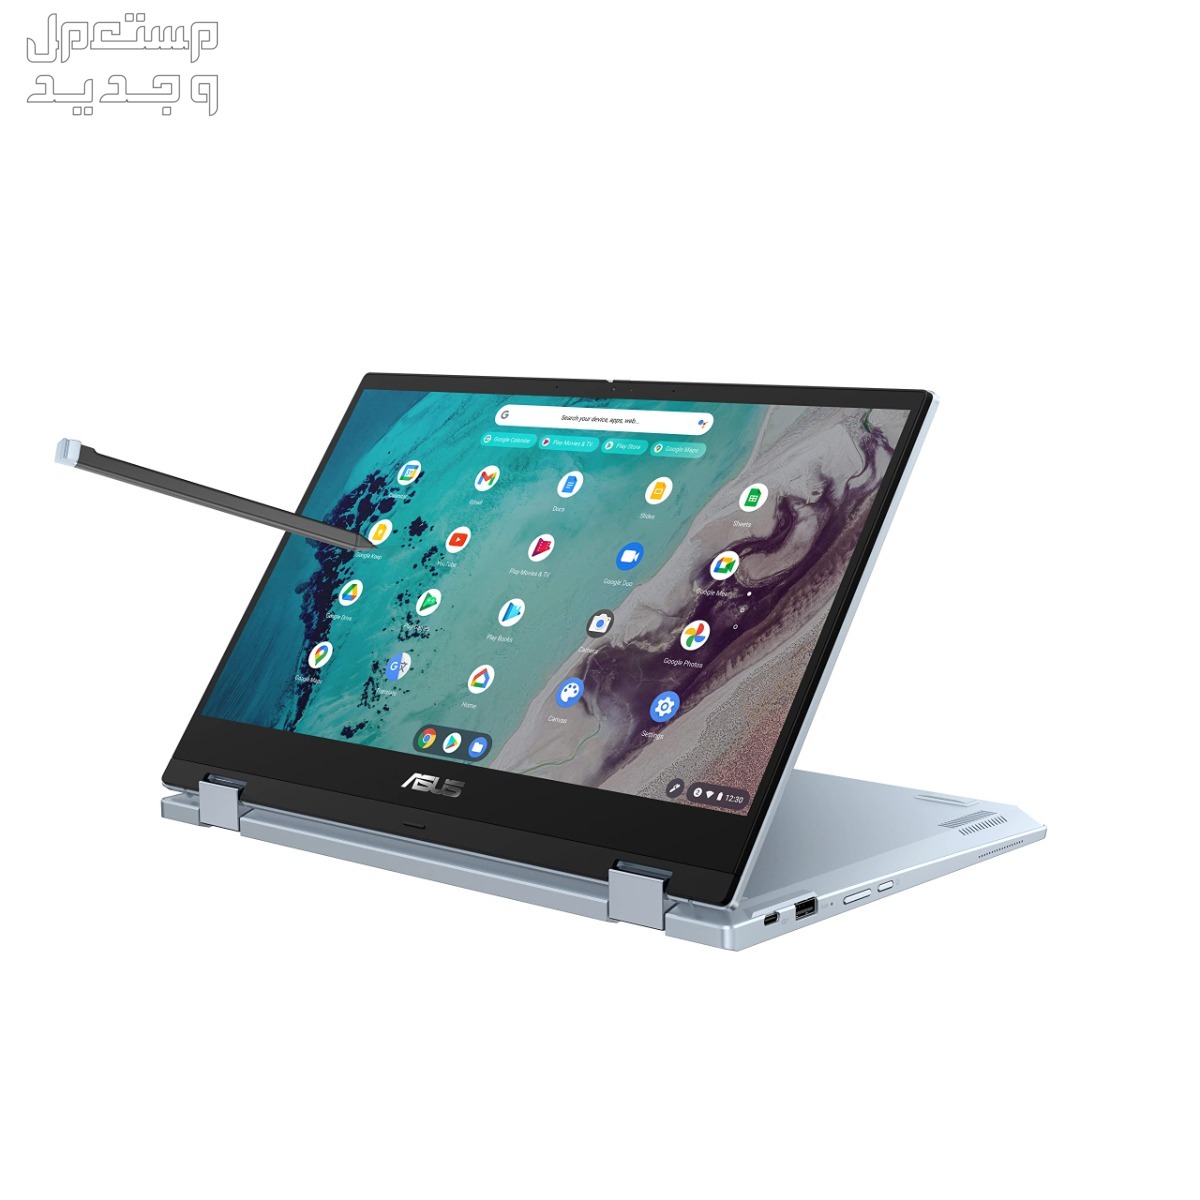 تعرف على أفضل لاب توب للبرمجة بسعر رخيص 2024 في الجزائر Asus Chromebook Flip CX3